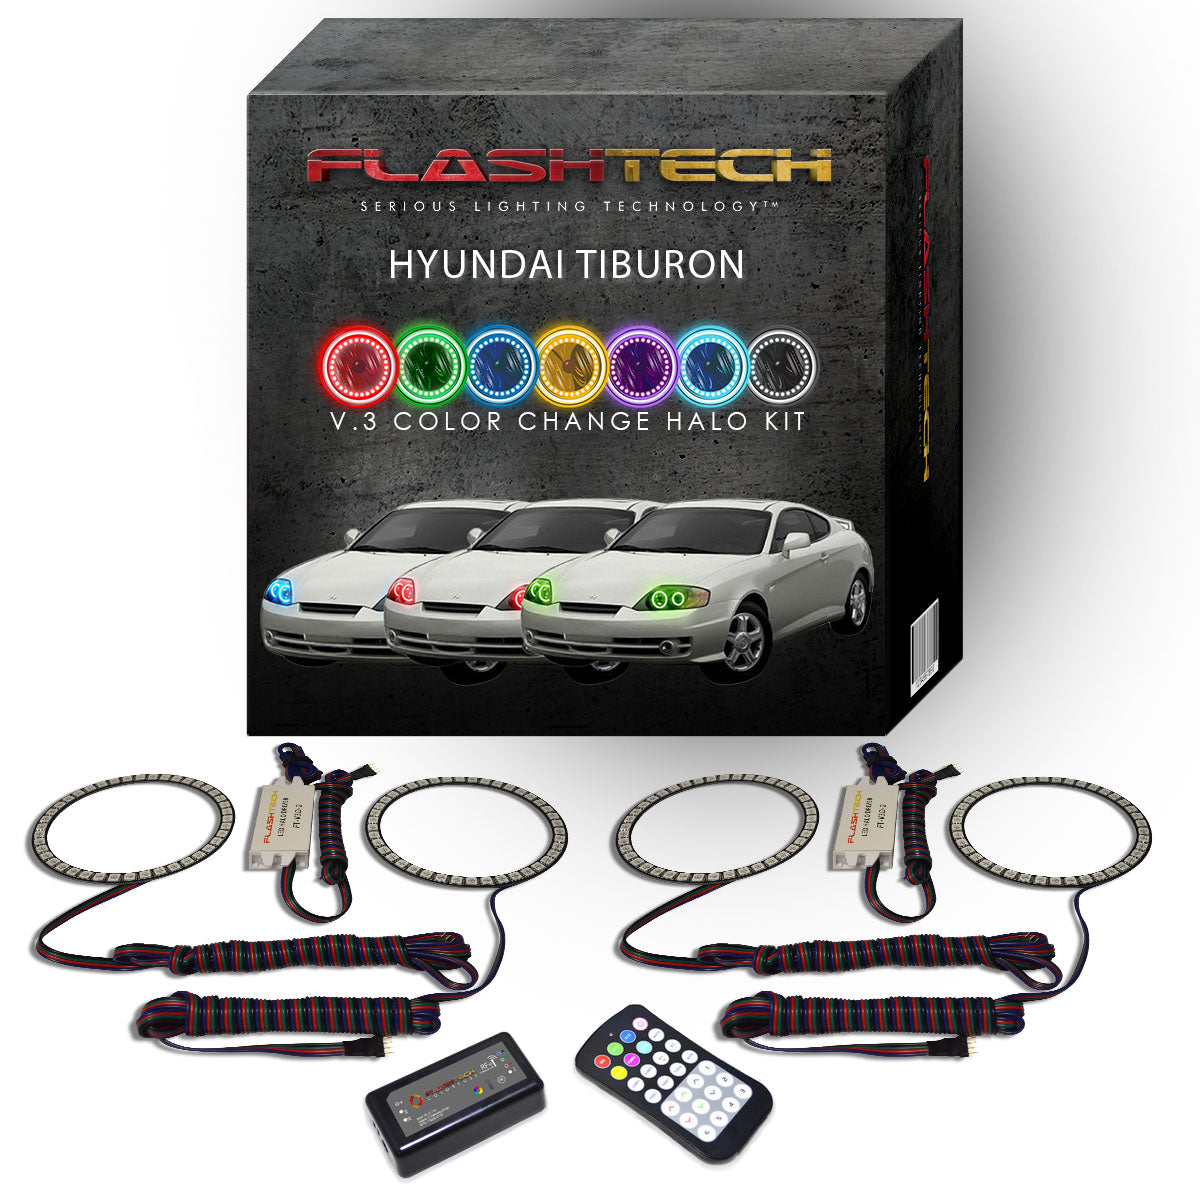 Hyundai-Tiburon-2003, 2004-LED-Halo-Headlights-RGB-RF Remote-HY-TB0304-V3HRF